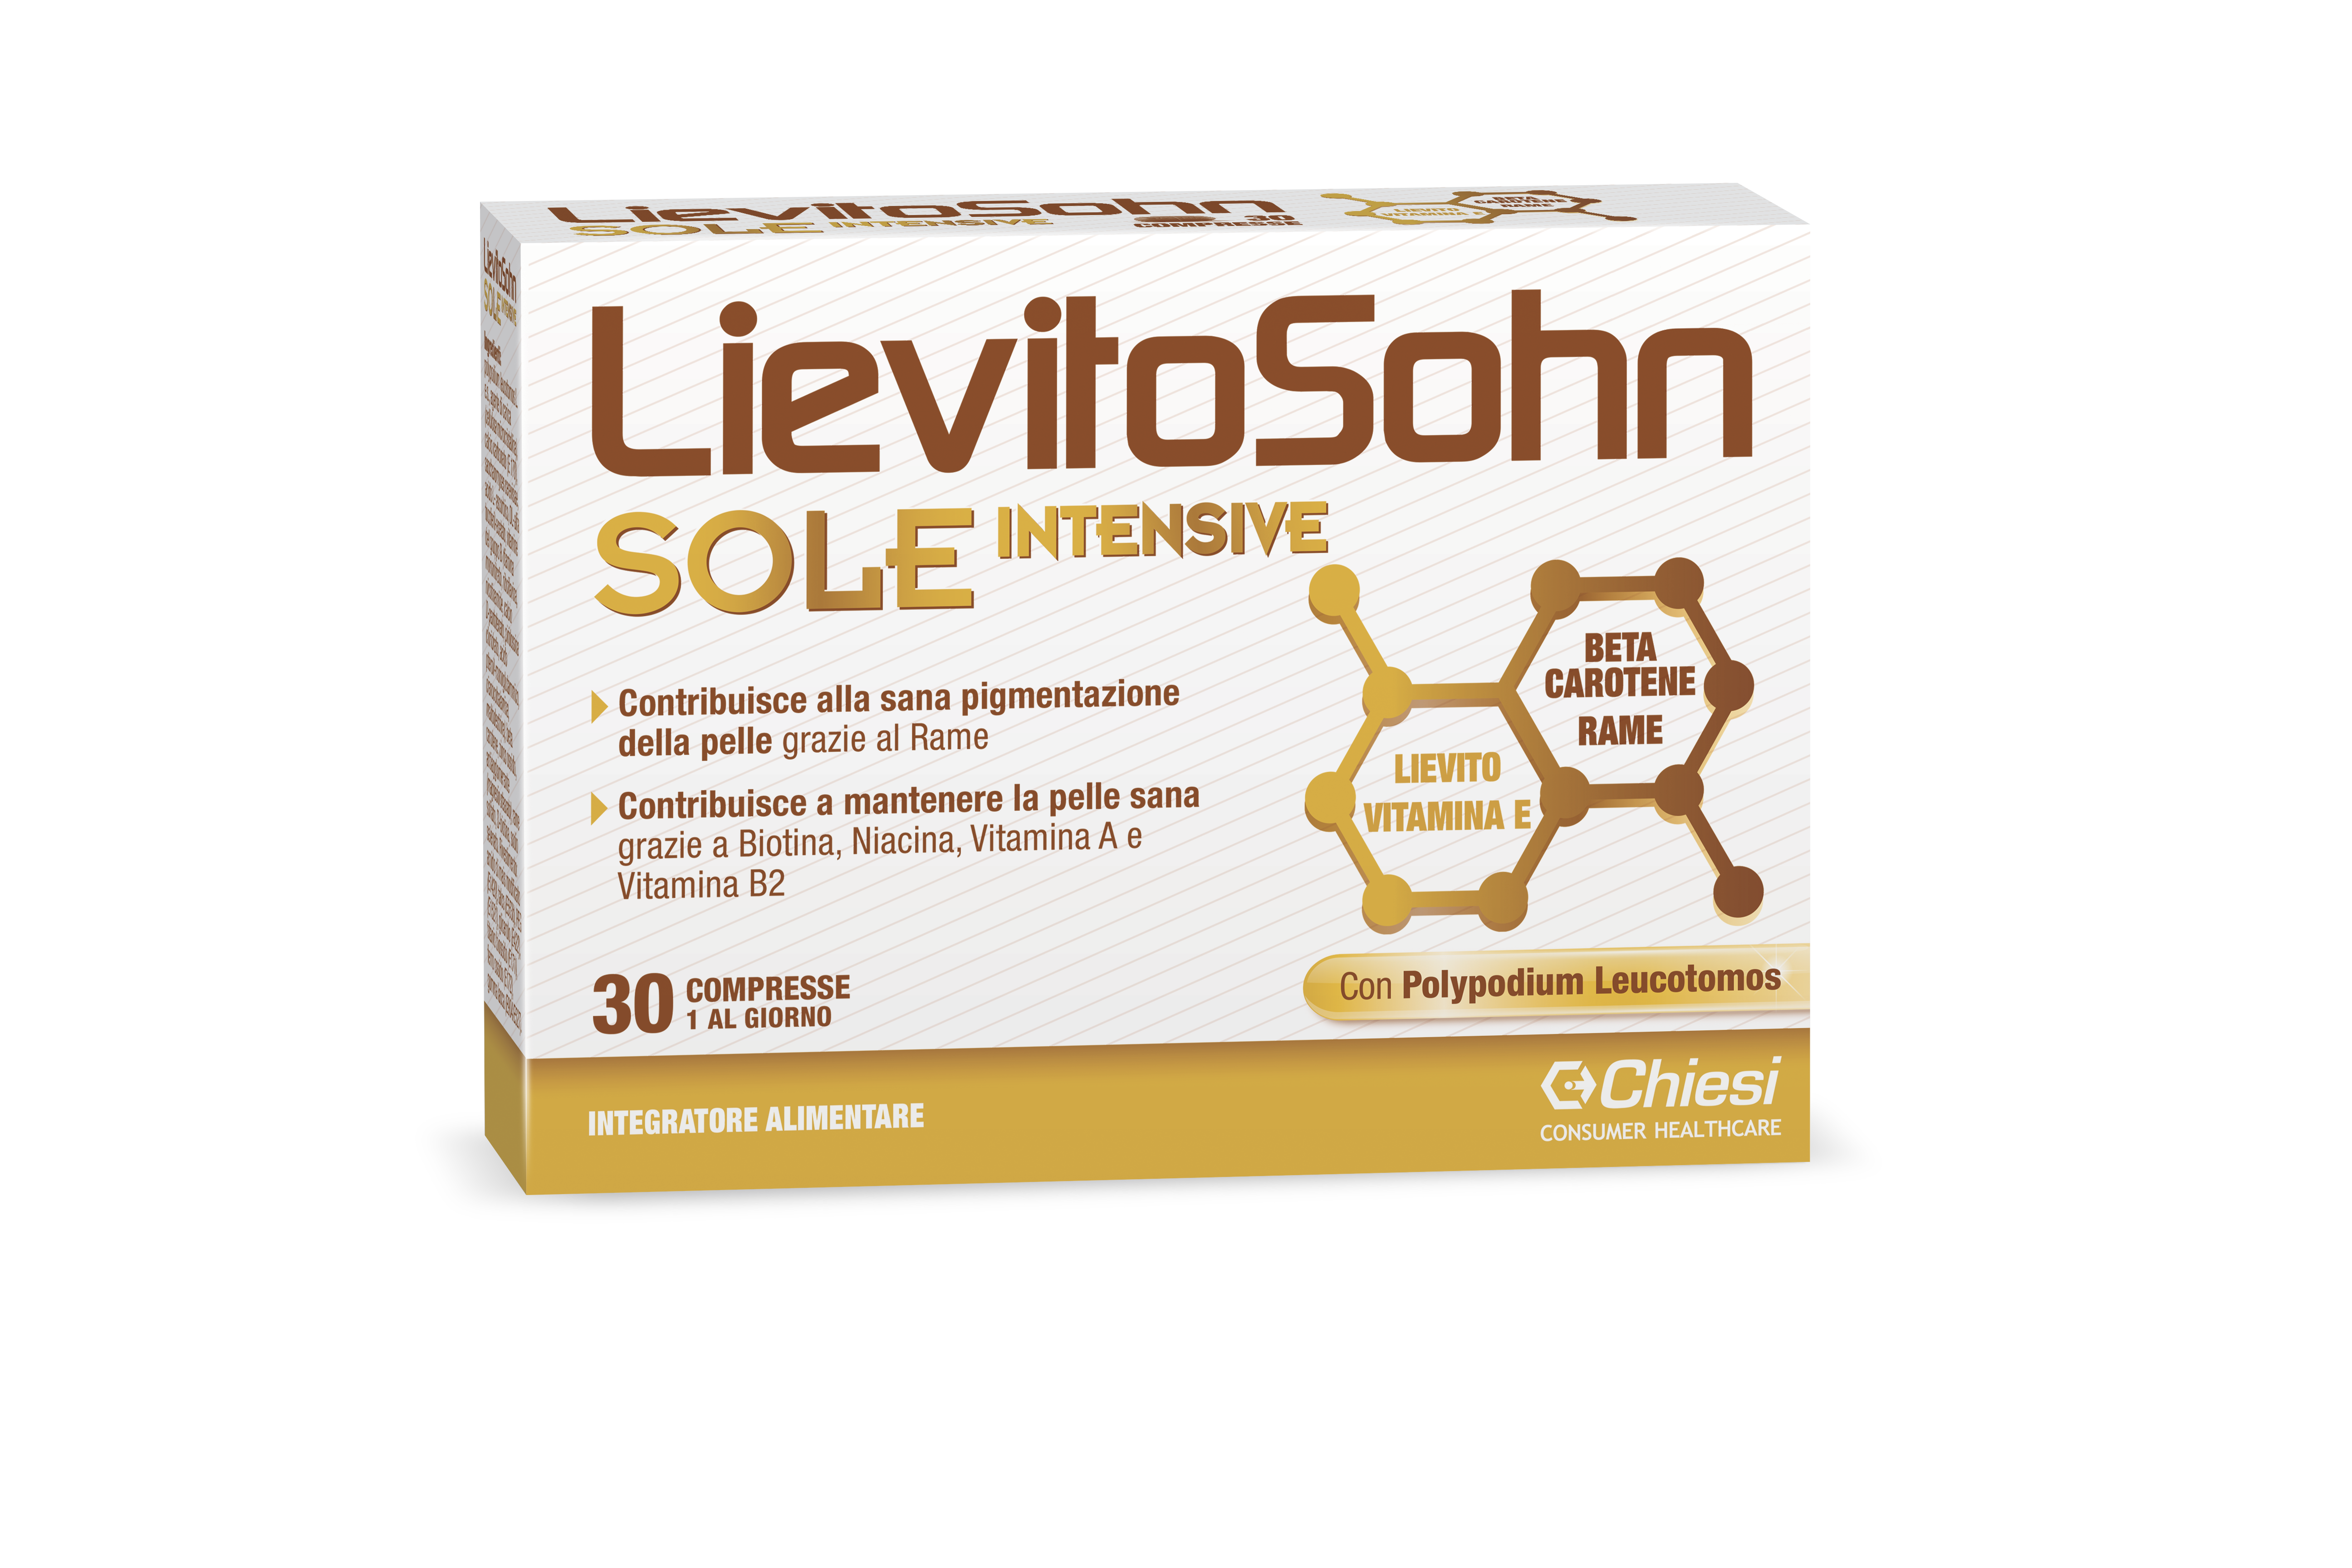 Immagine della confezione di Lievitosohn sole intensive, integratore di Chiesi Farmaceutici S.p.A.